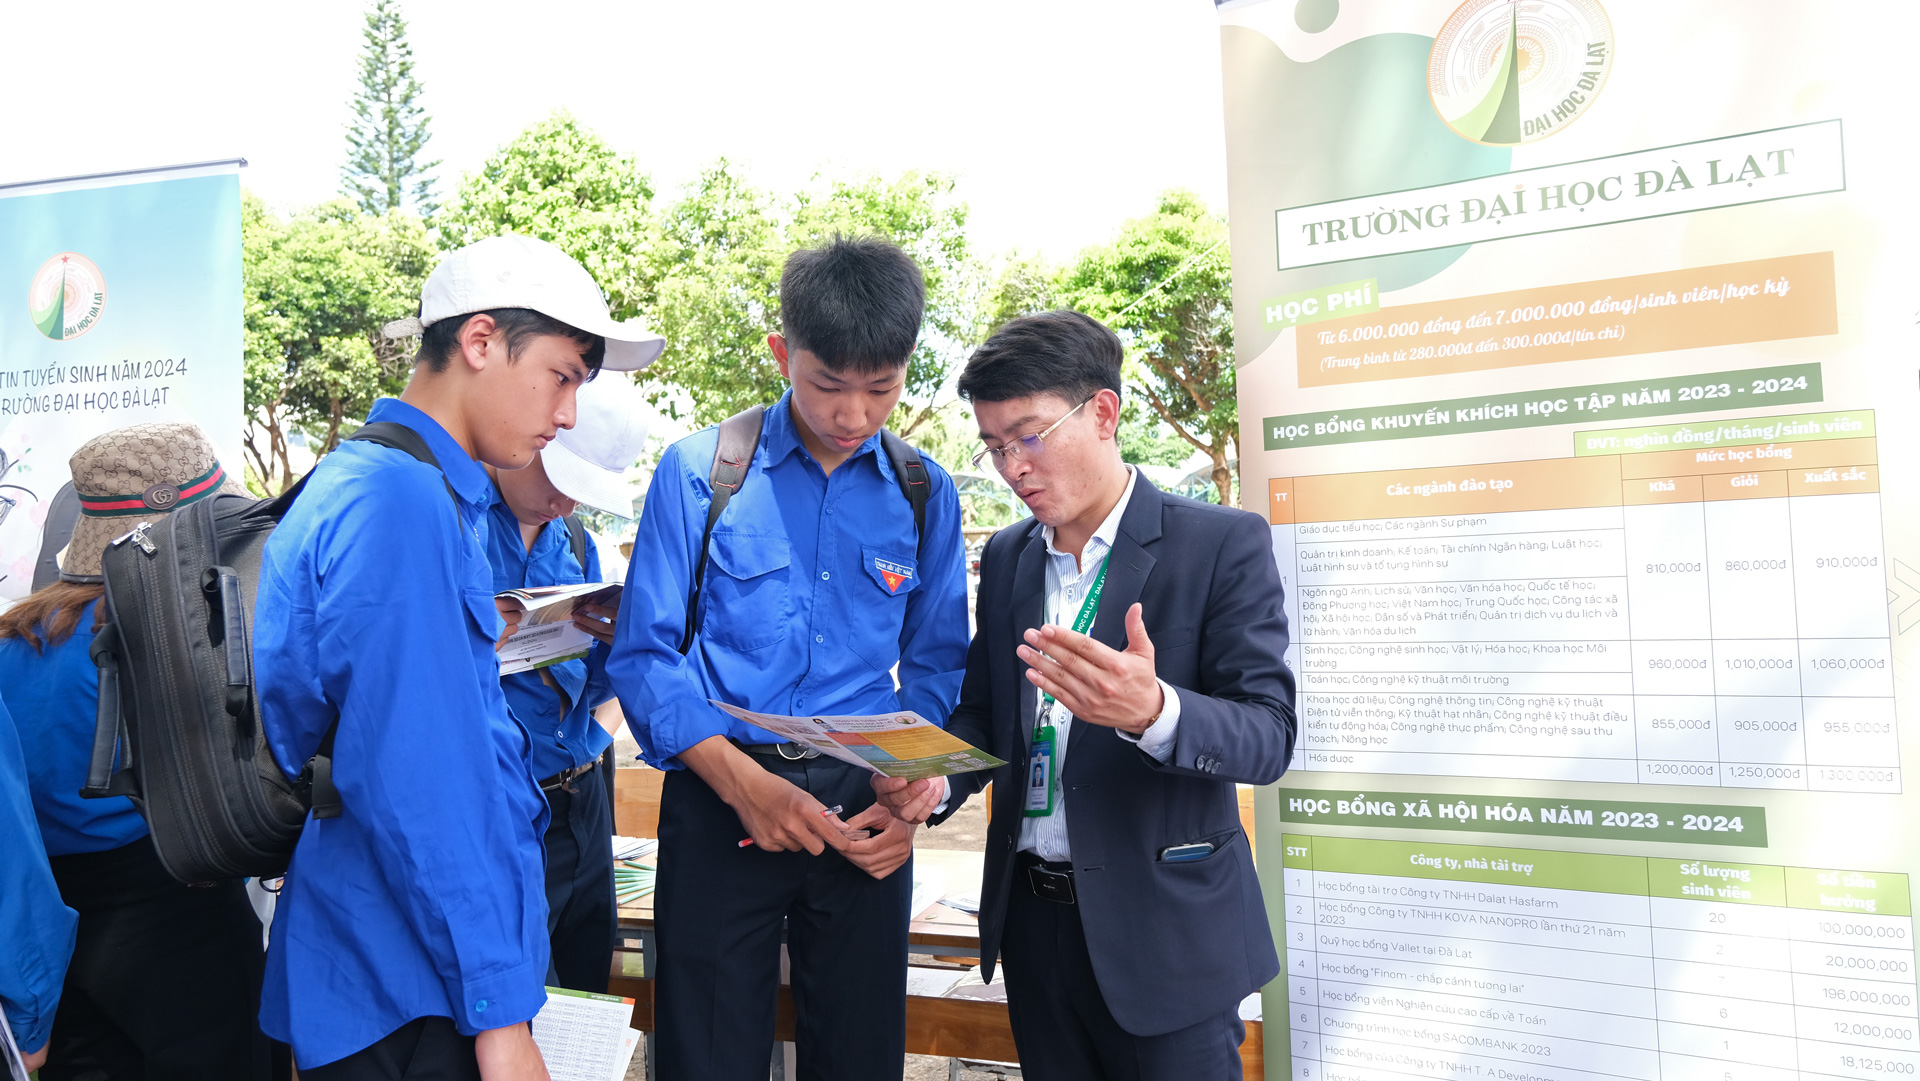 Tỷ lệ học sinh, sinh viên khu vực Tây Nguyên nói chung và tỉnh Lâm Đồng nói riêng theo học Trường Đại học Đà Lạt tăng dần qua các năm